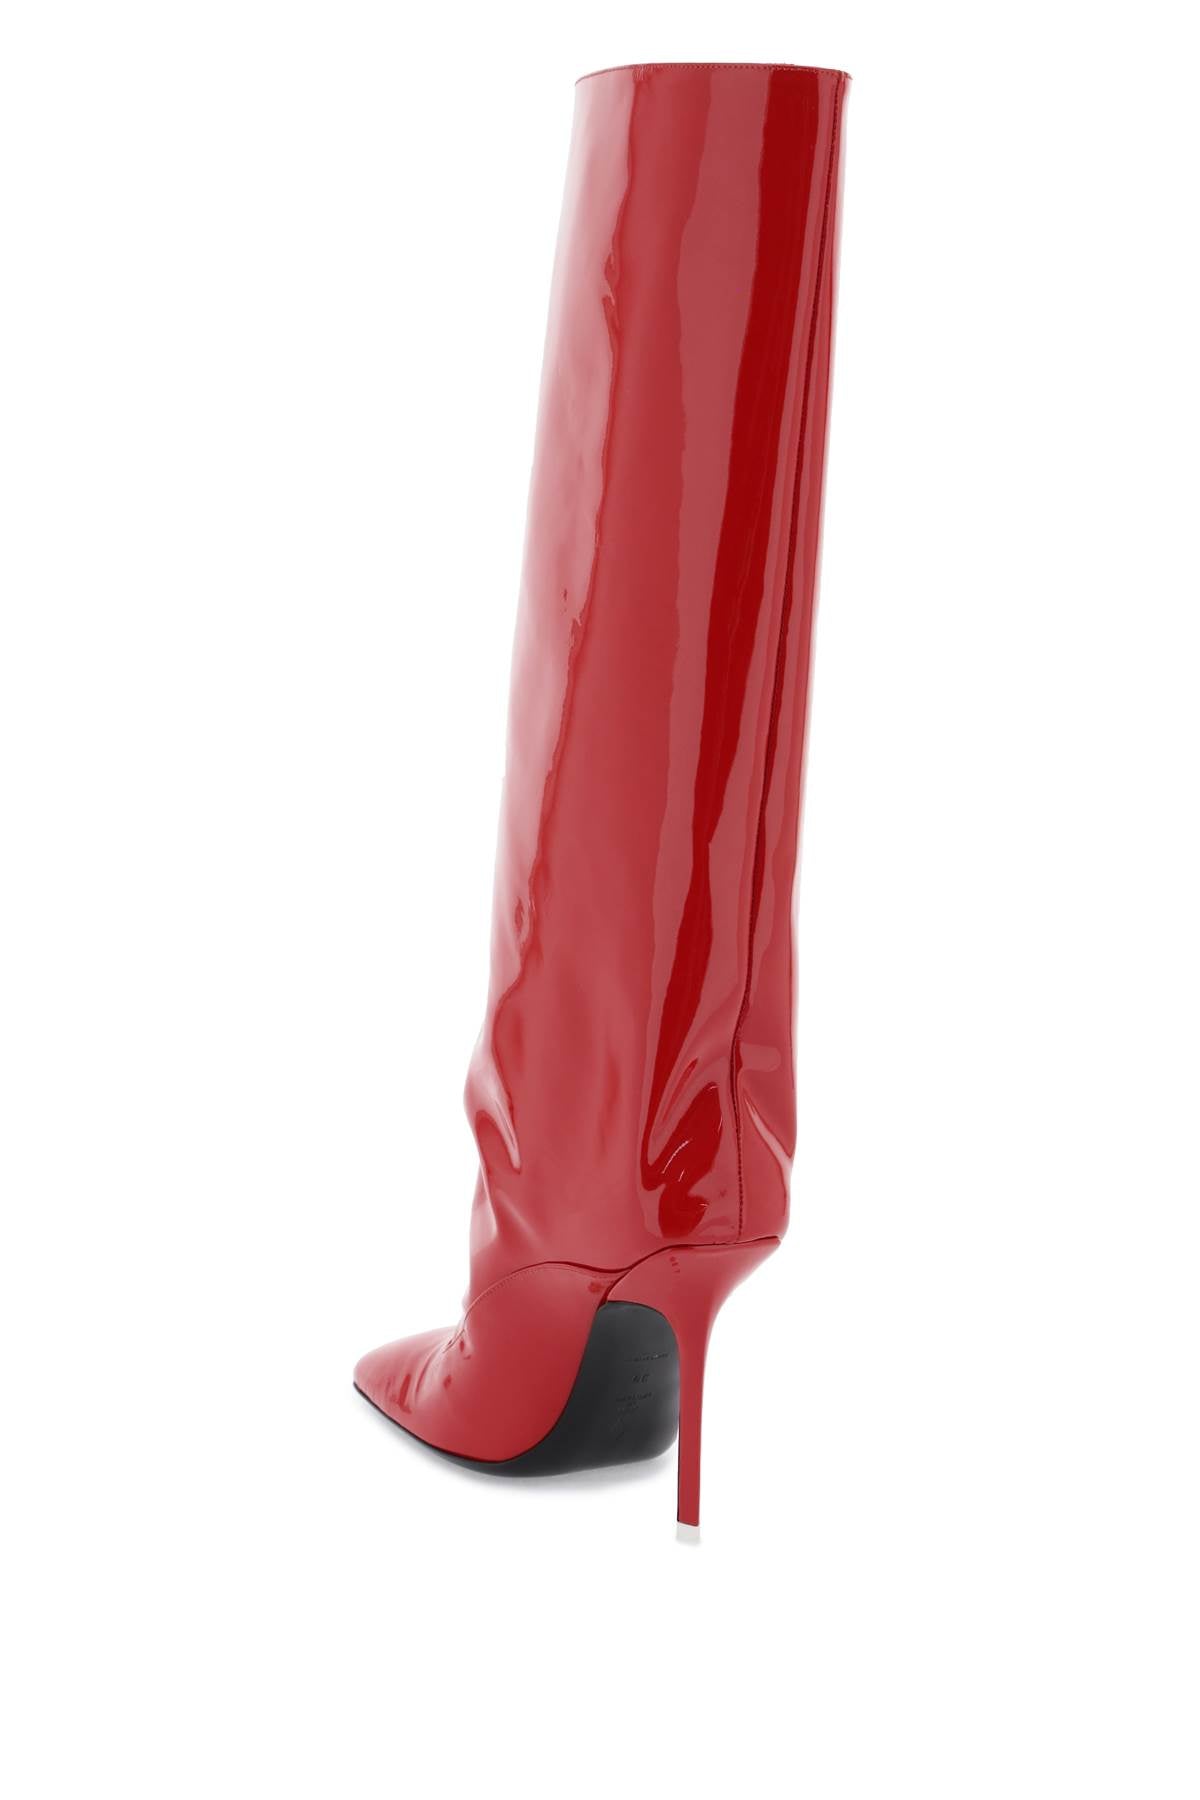 赤いパテントレザースクエアトゥチューブブーツ for 女性 from THE ATTICO